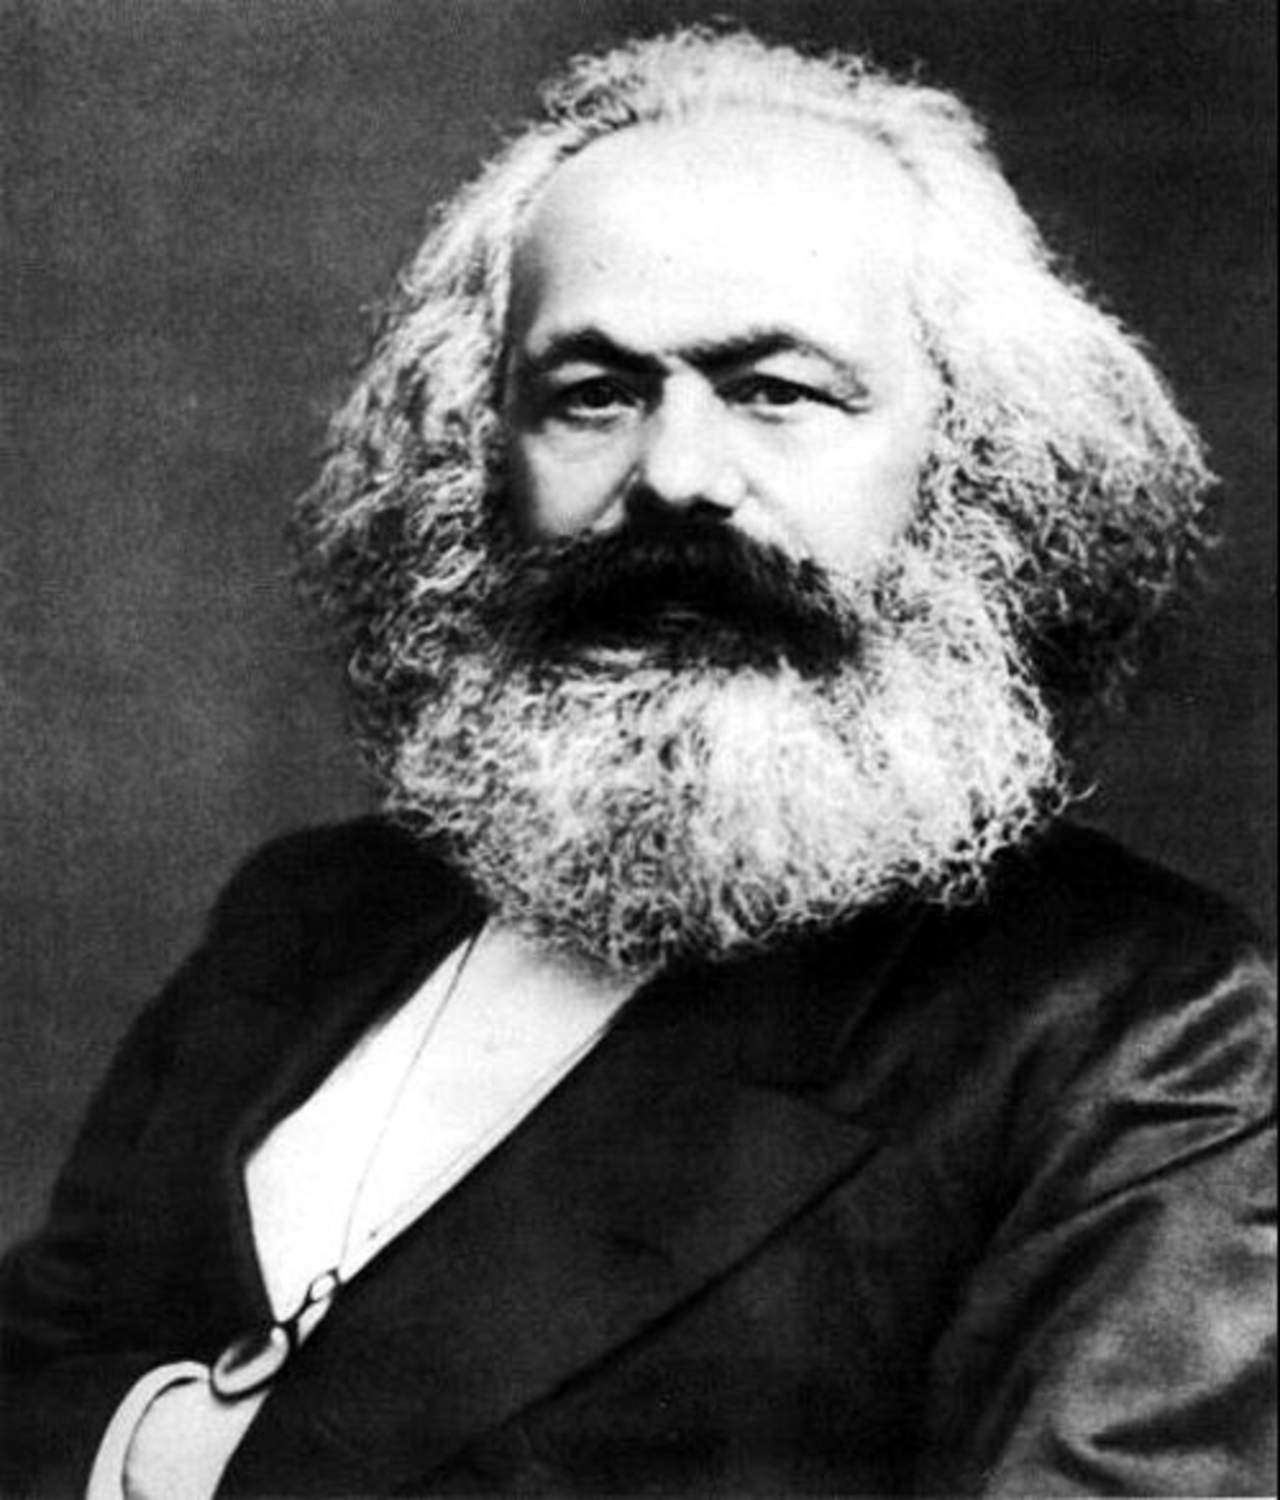 Mientras Marx fue una figura casi desconocida en vida, sus ideas y teorías llegaron a ejercer gran influencia en los movimientos sociales del siglo XX. (ESPECIAL)